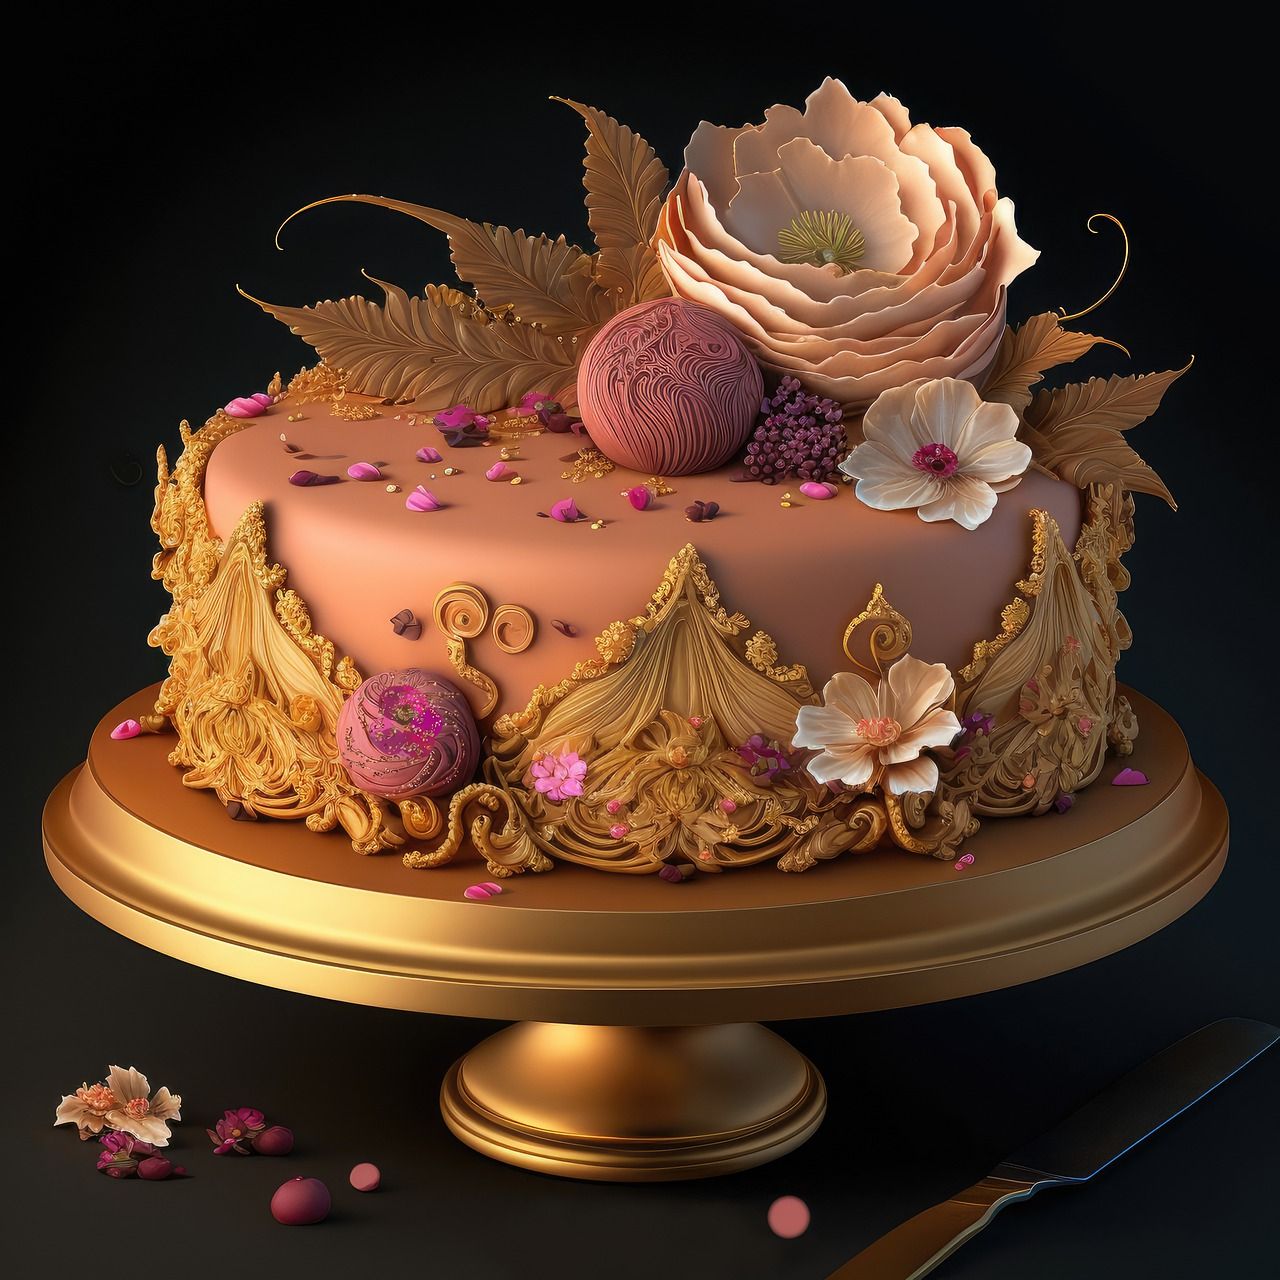 Jak wykorzystać tylki cukiernicze w dekoracji ciast i tortów?